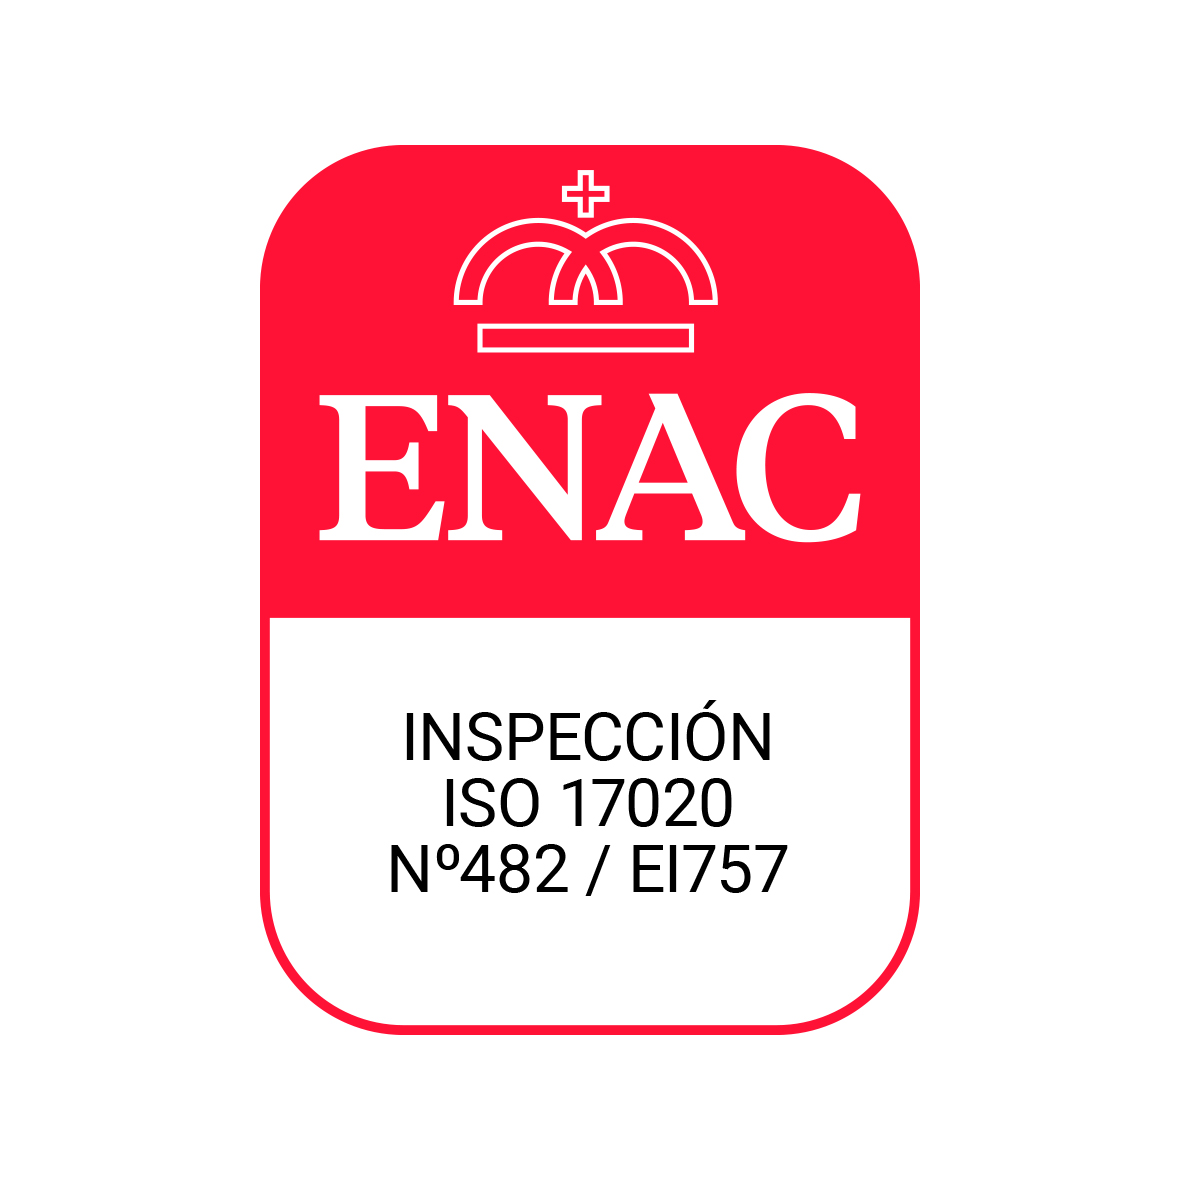 Certificado Inspeccion Enac